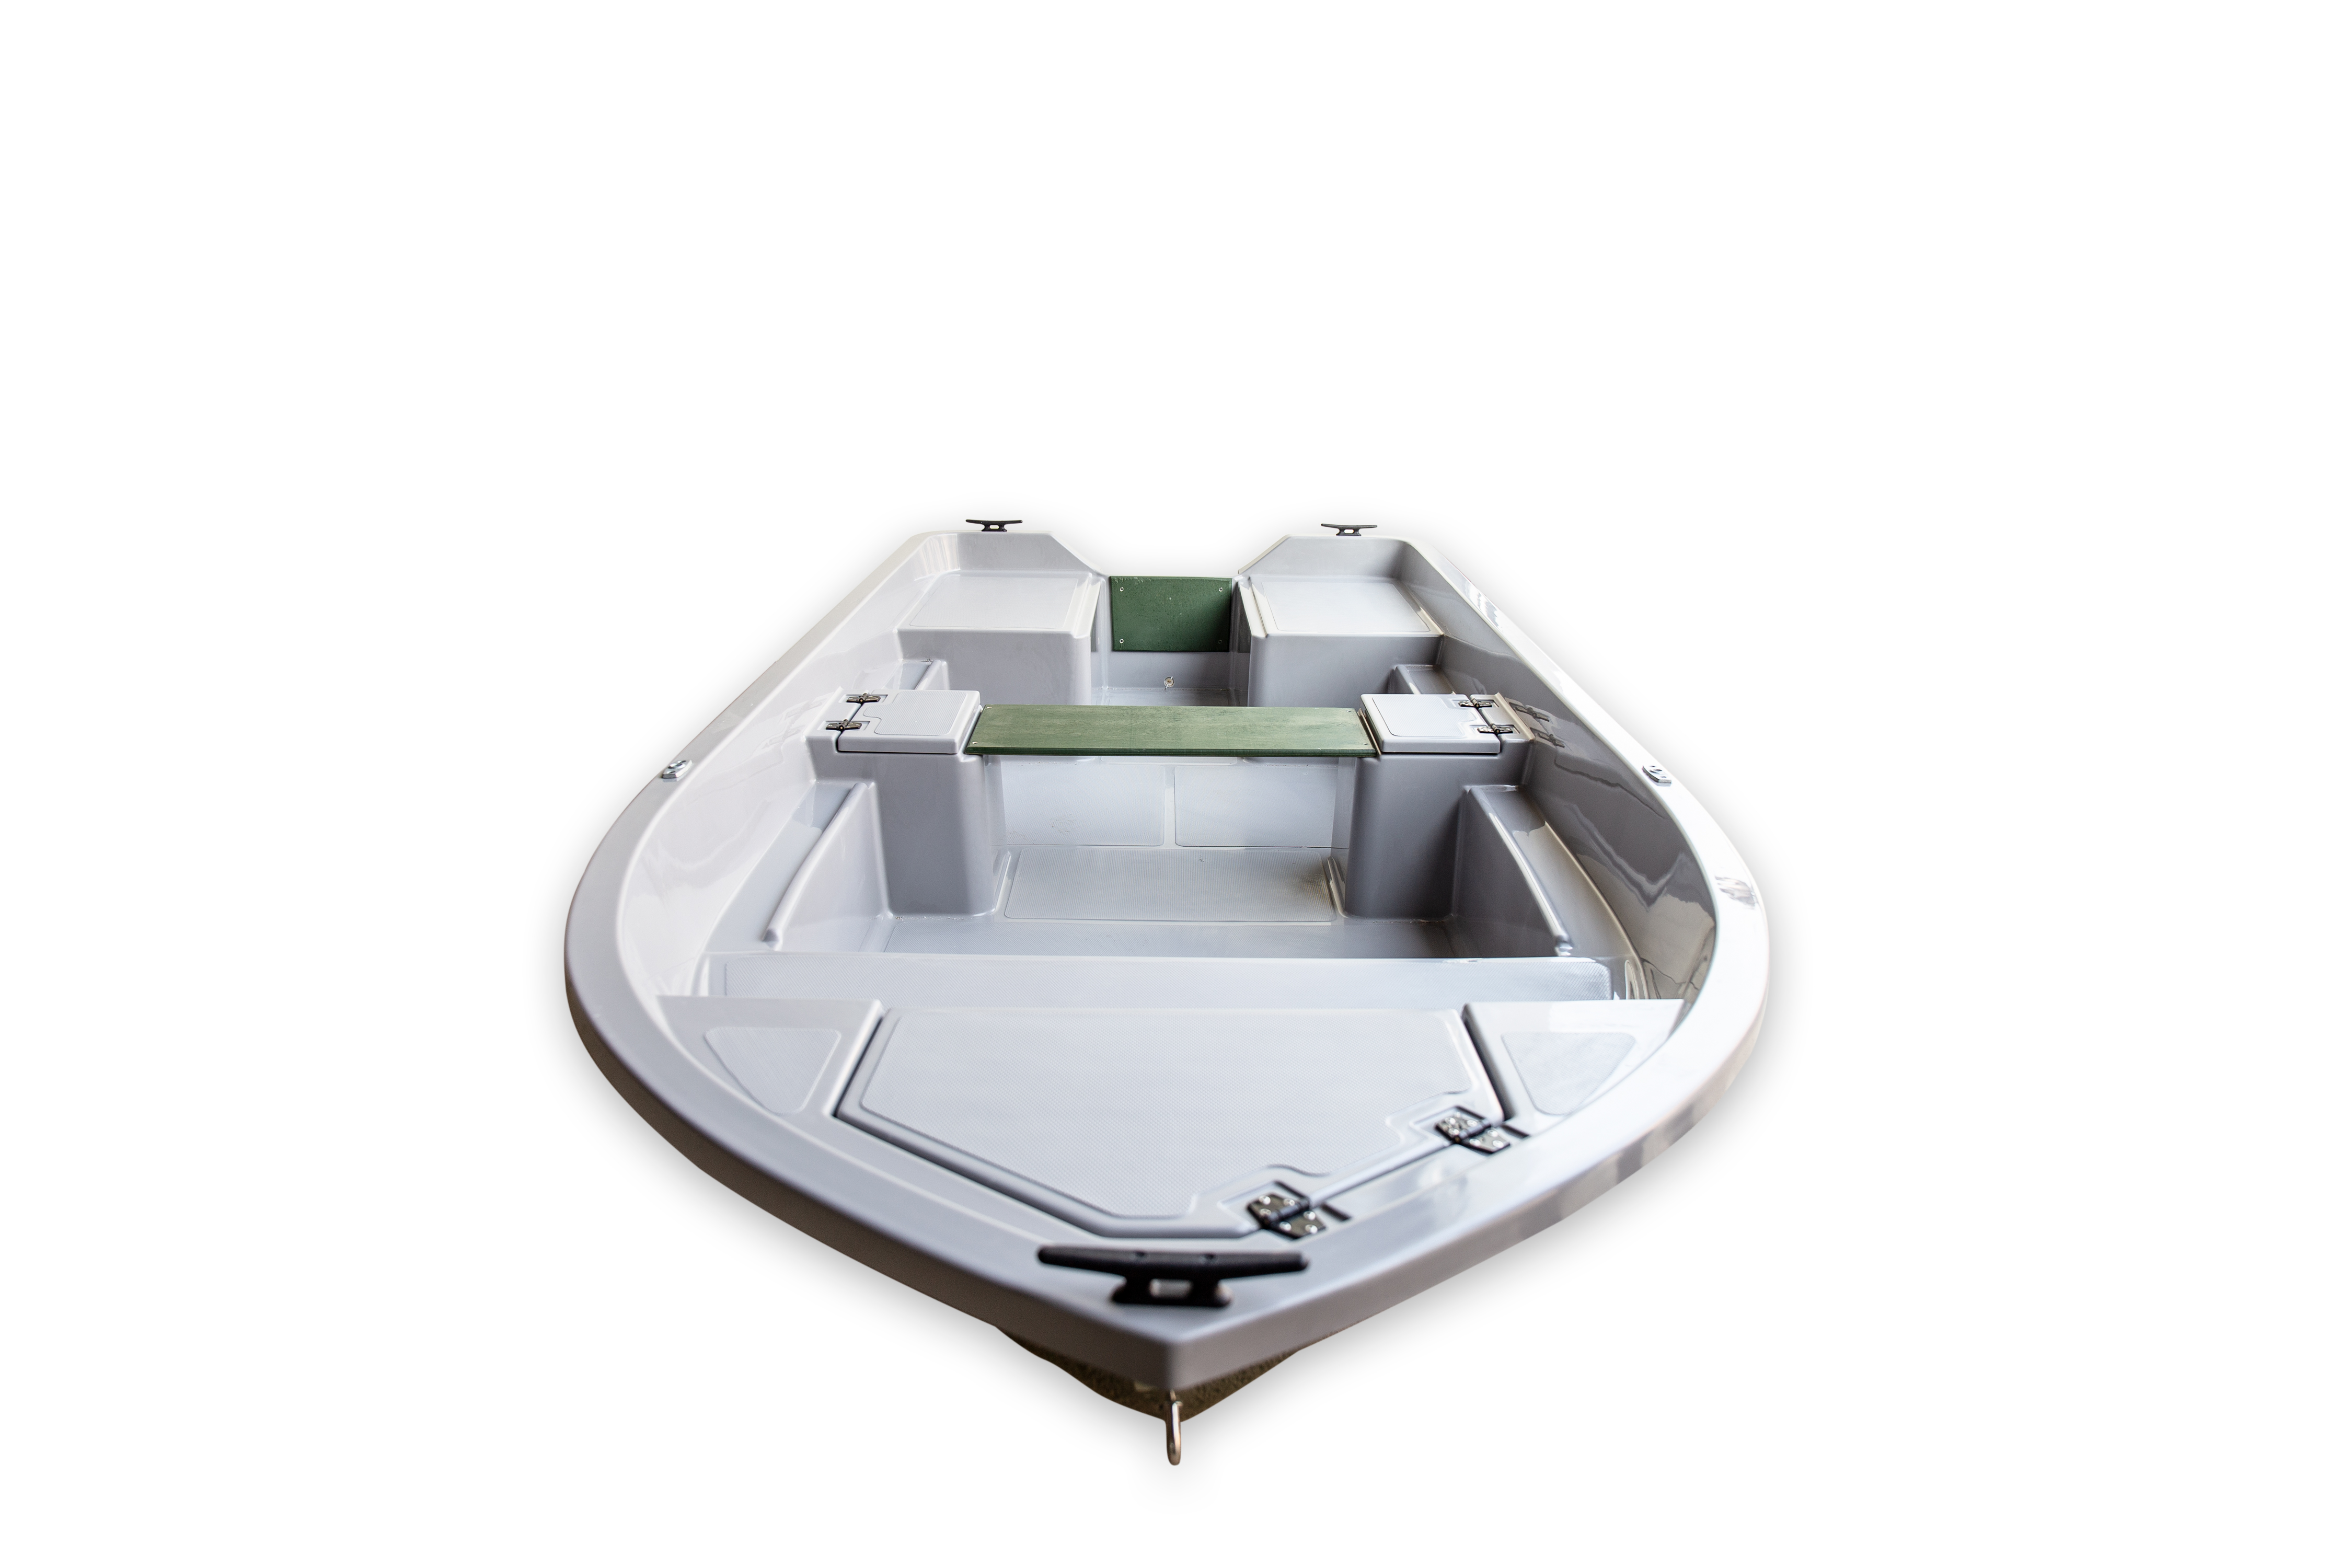 Аква-оптима 190 с гребками (Самая маленькая и легкая лодка ПВХ)